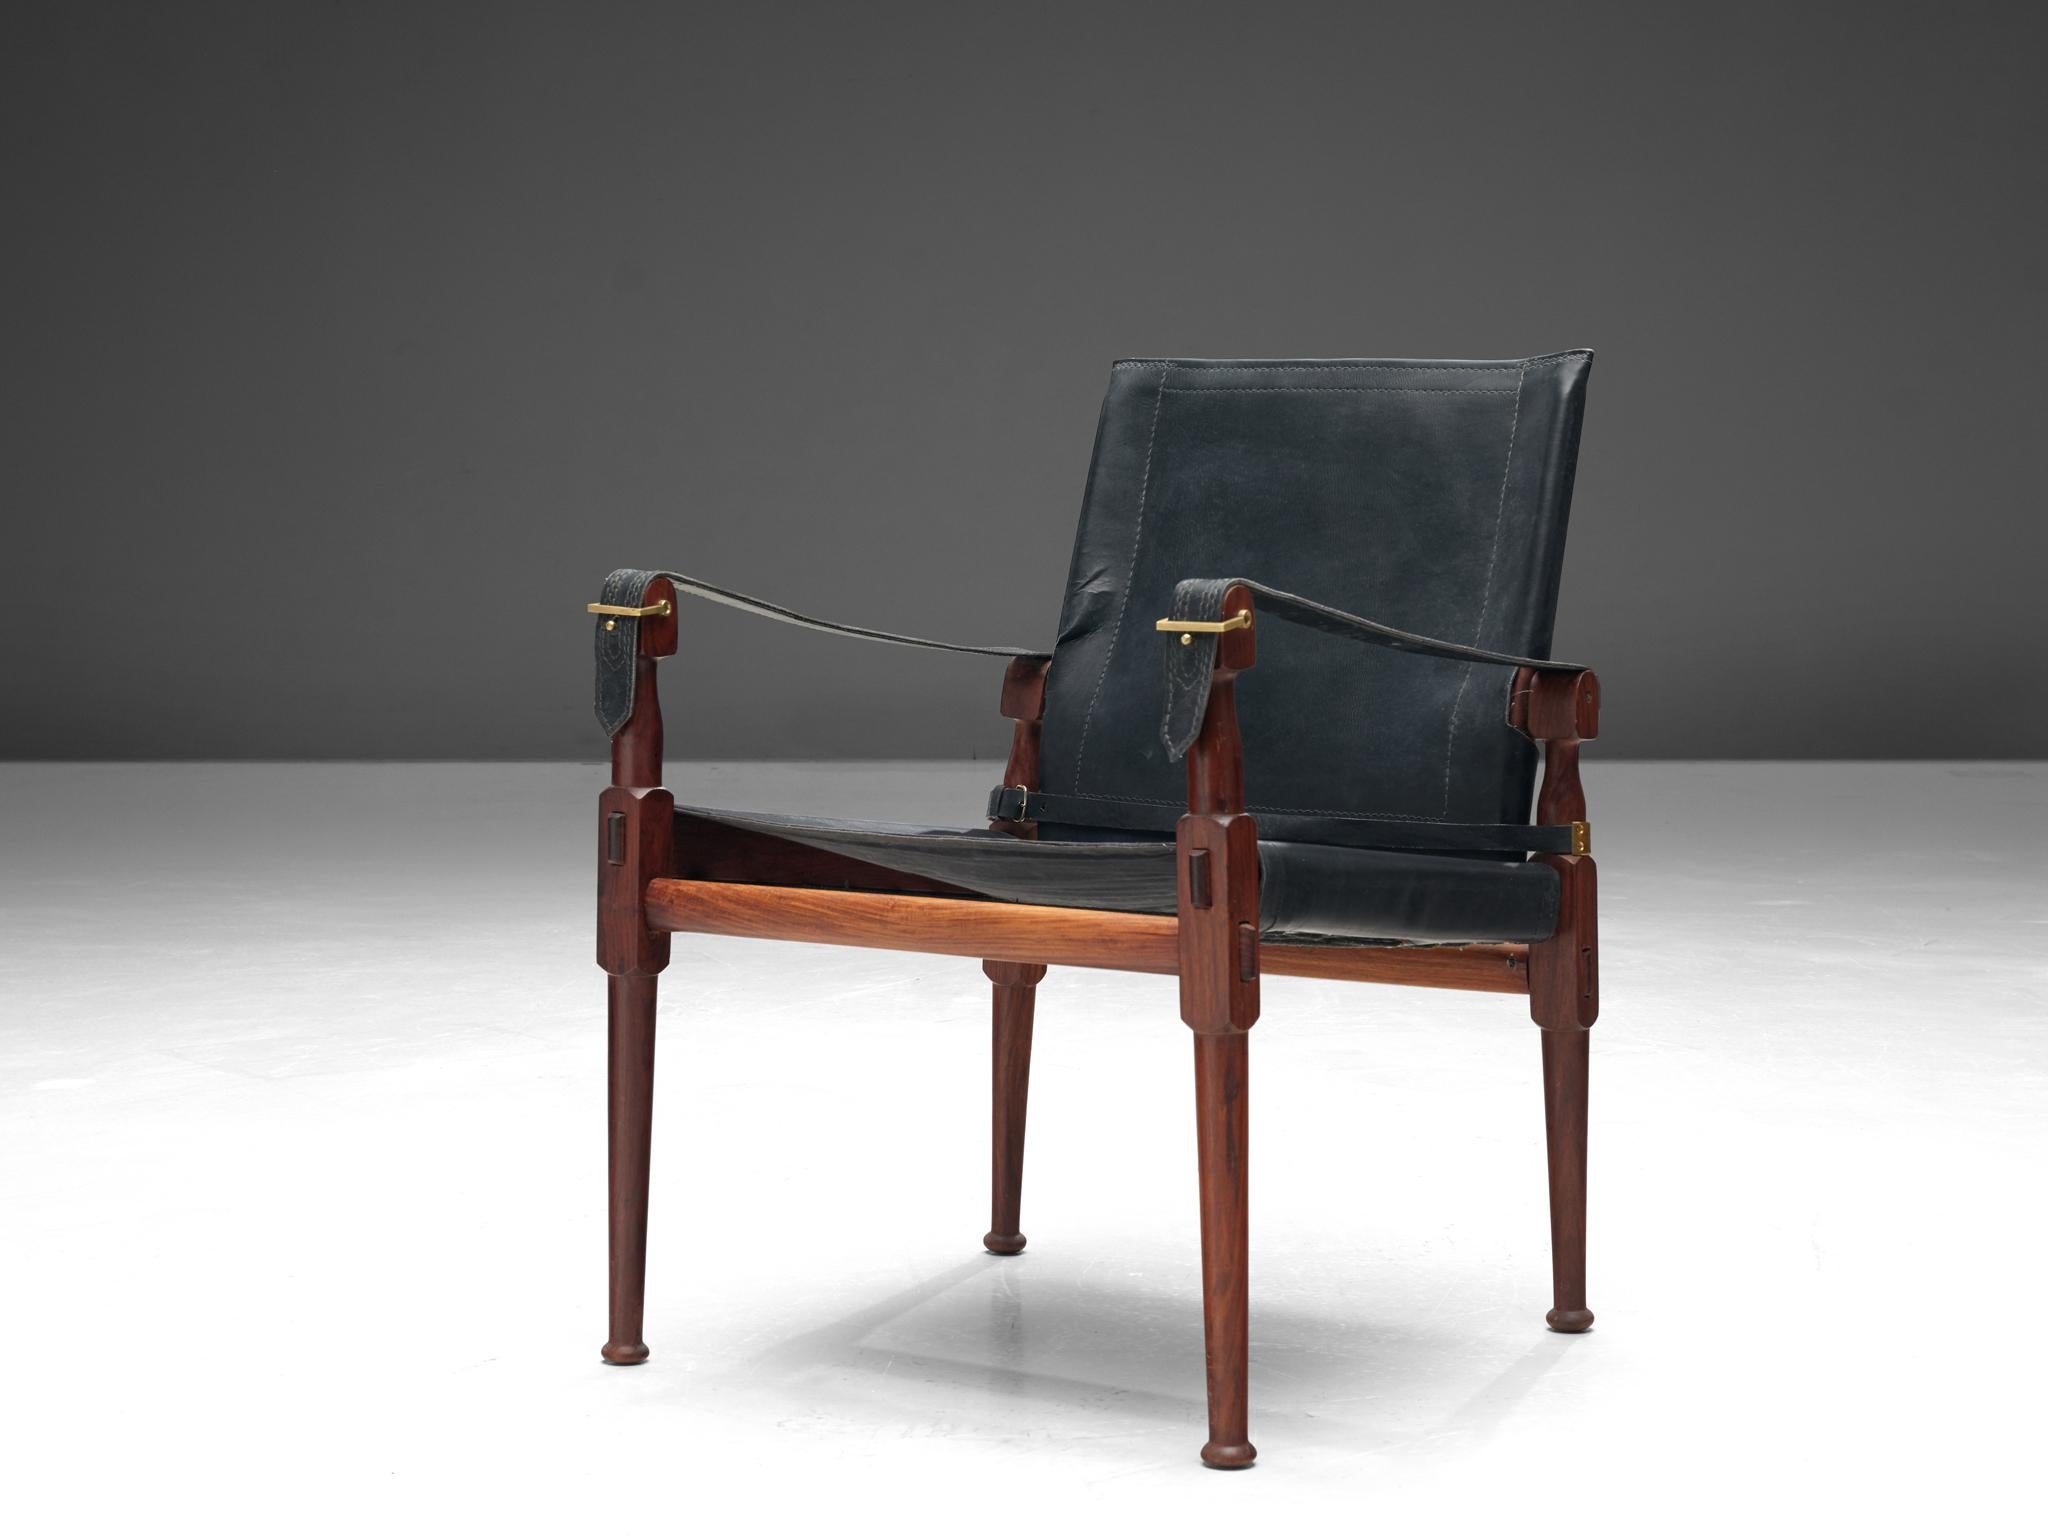 Chaise longue 'Safari', bois, cuir noir et laiton, Pakistan, 1970

Ce fauteuil 